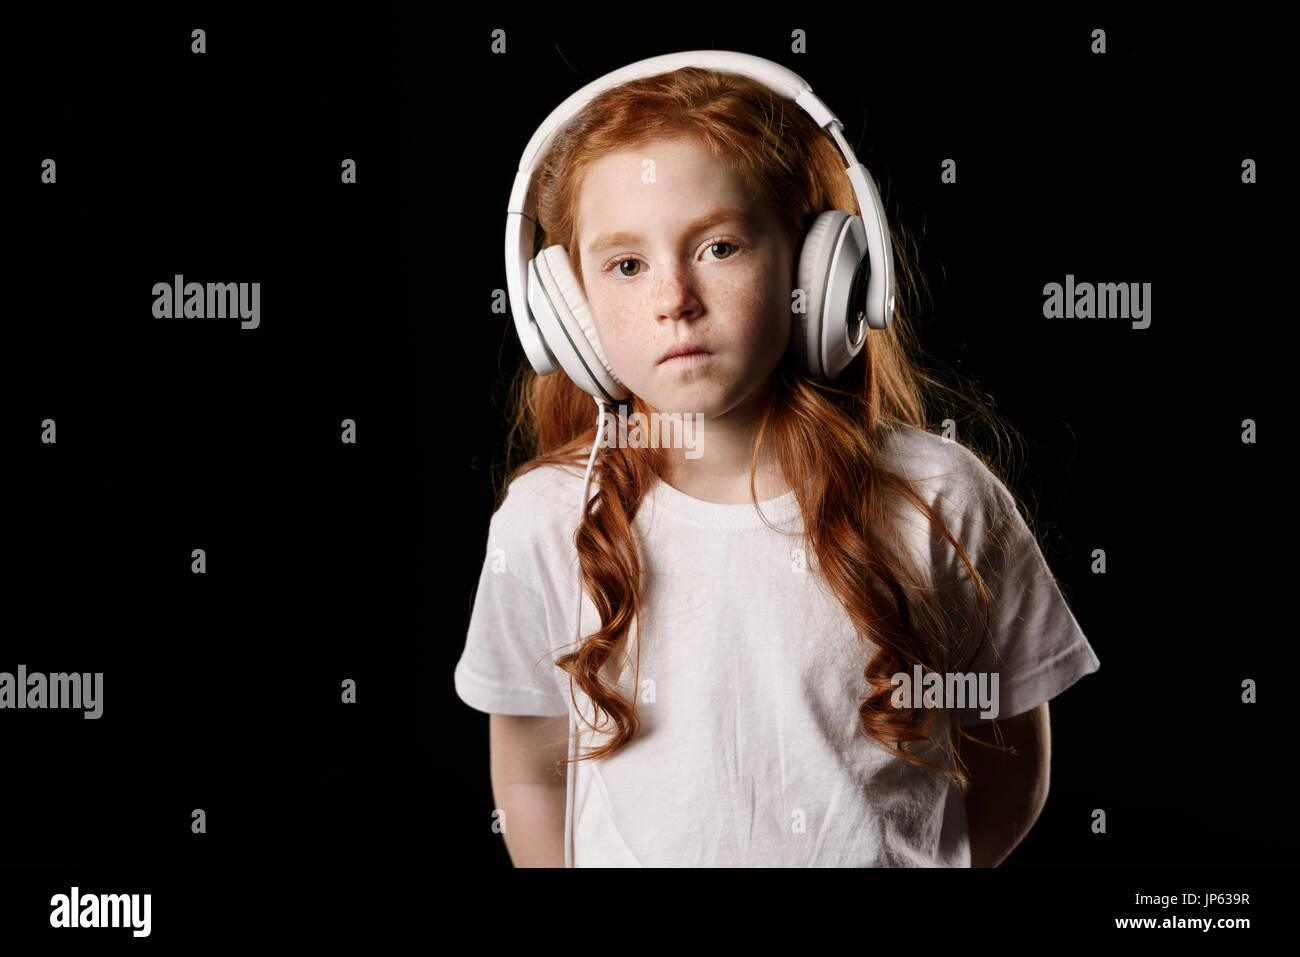 Portrait de petite fille en listenign music headphones isolated on black Banque D'Images